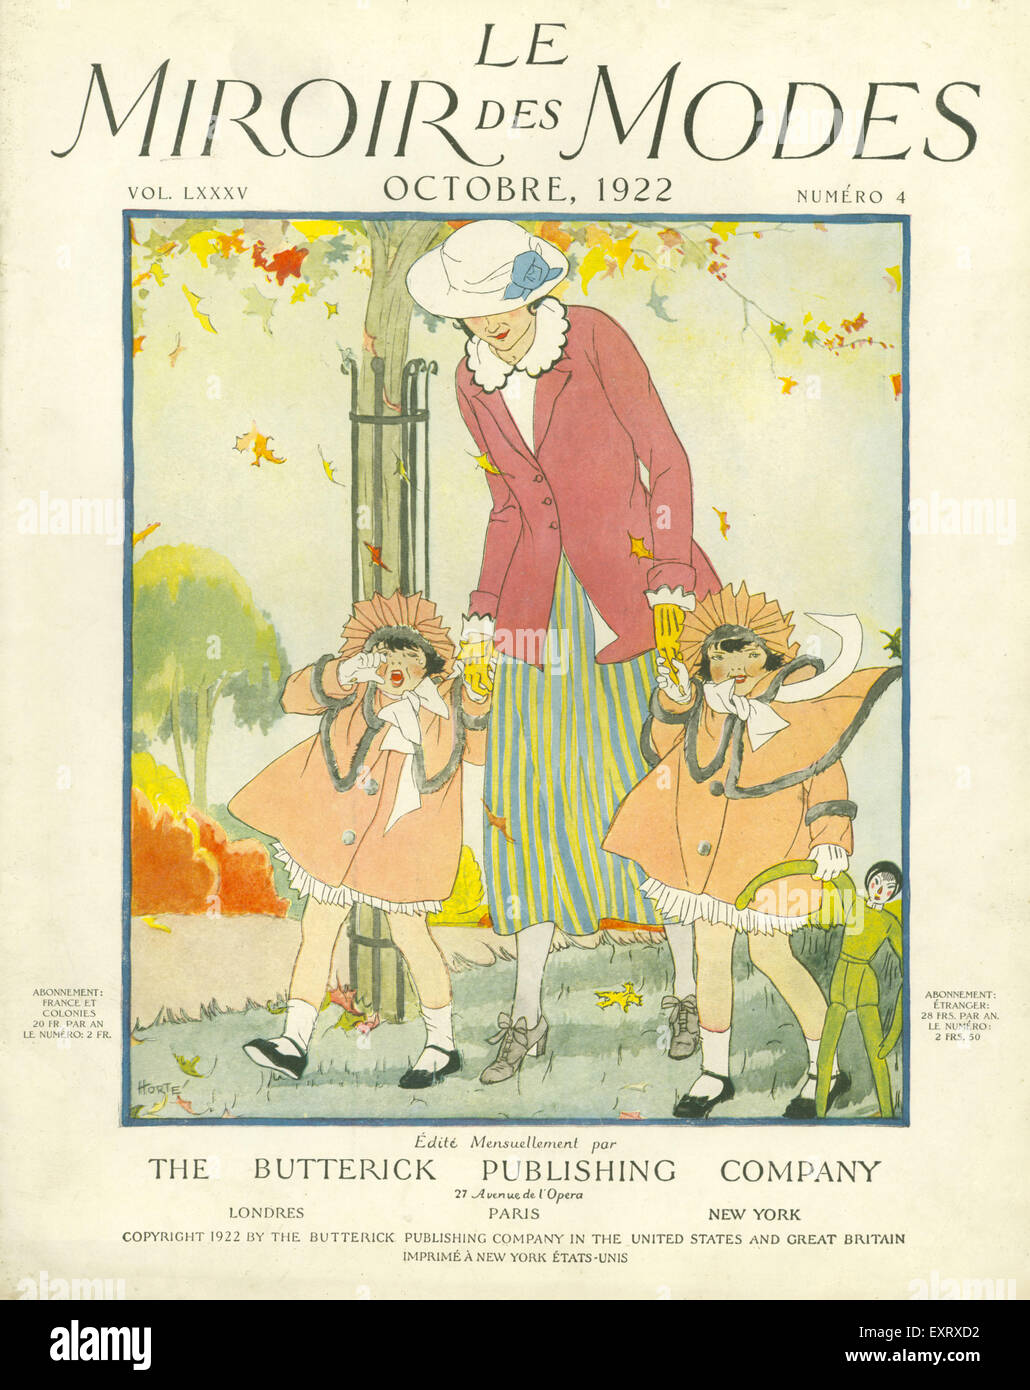 1920s France Le Miroir des Modes Magazine Cover Stock Photo - Alamy